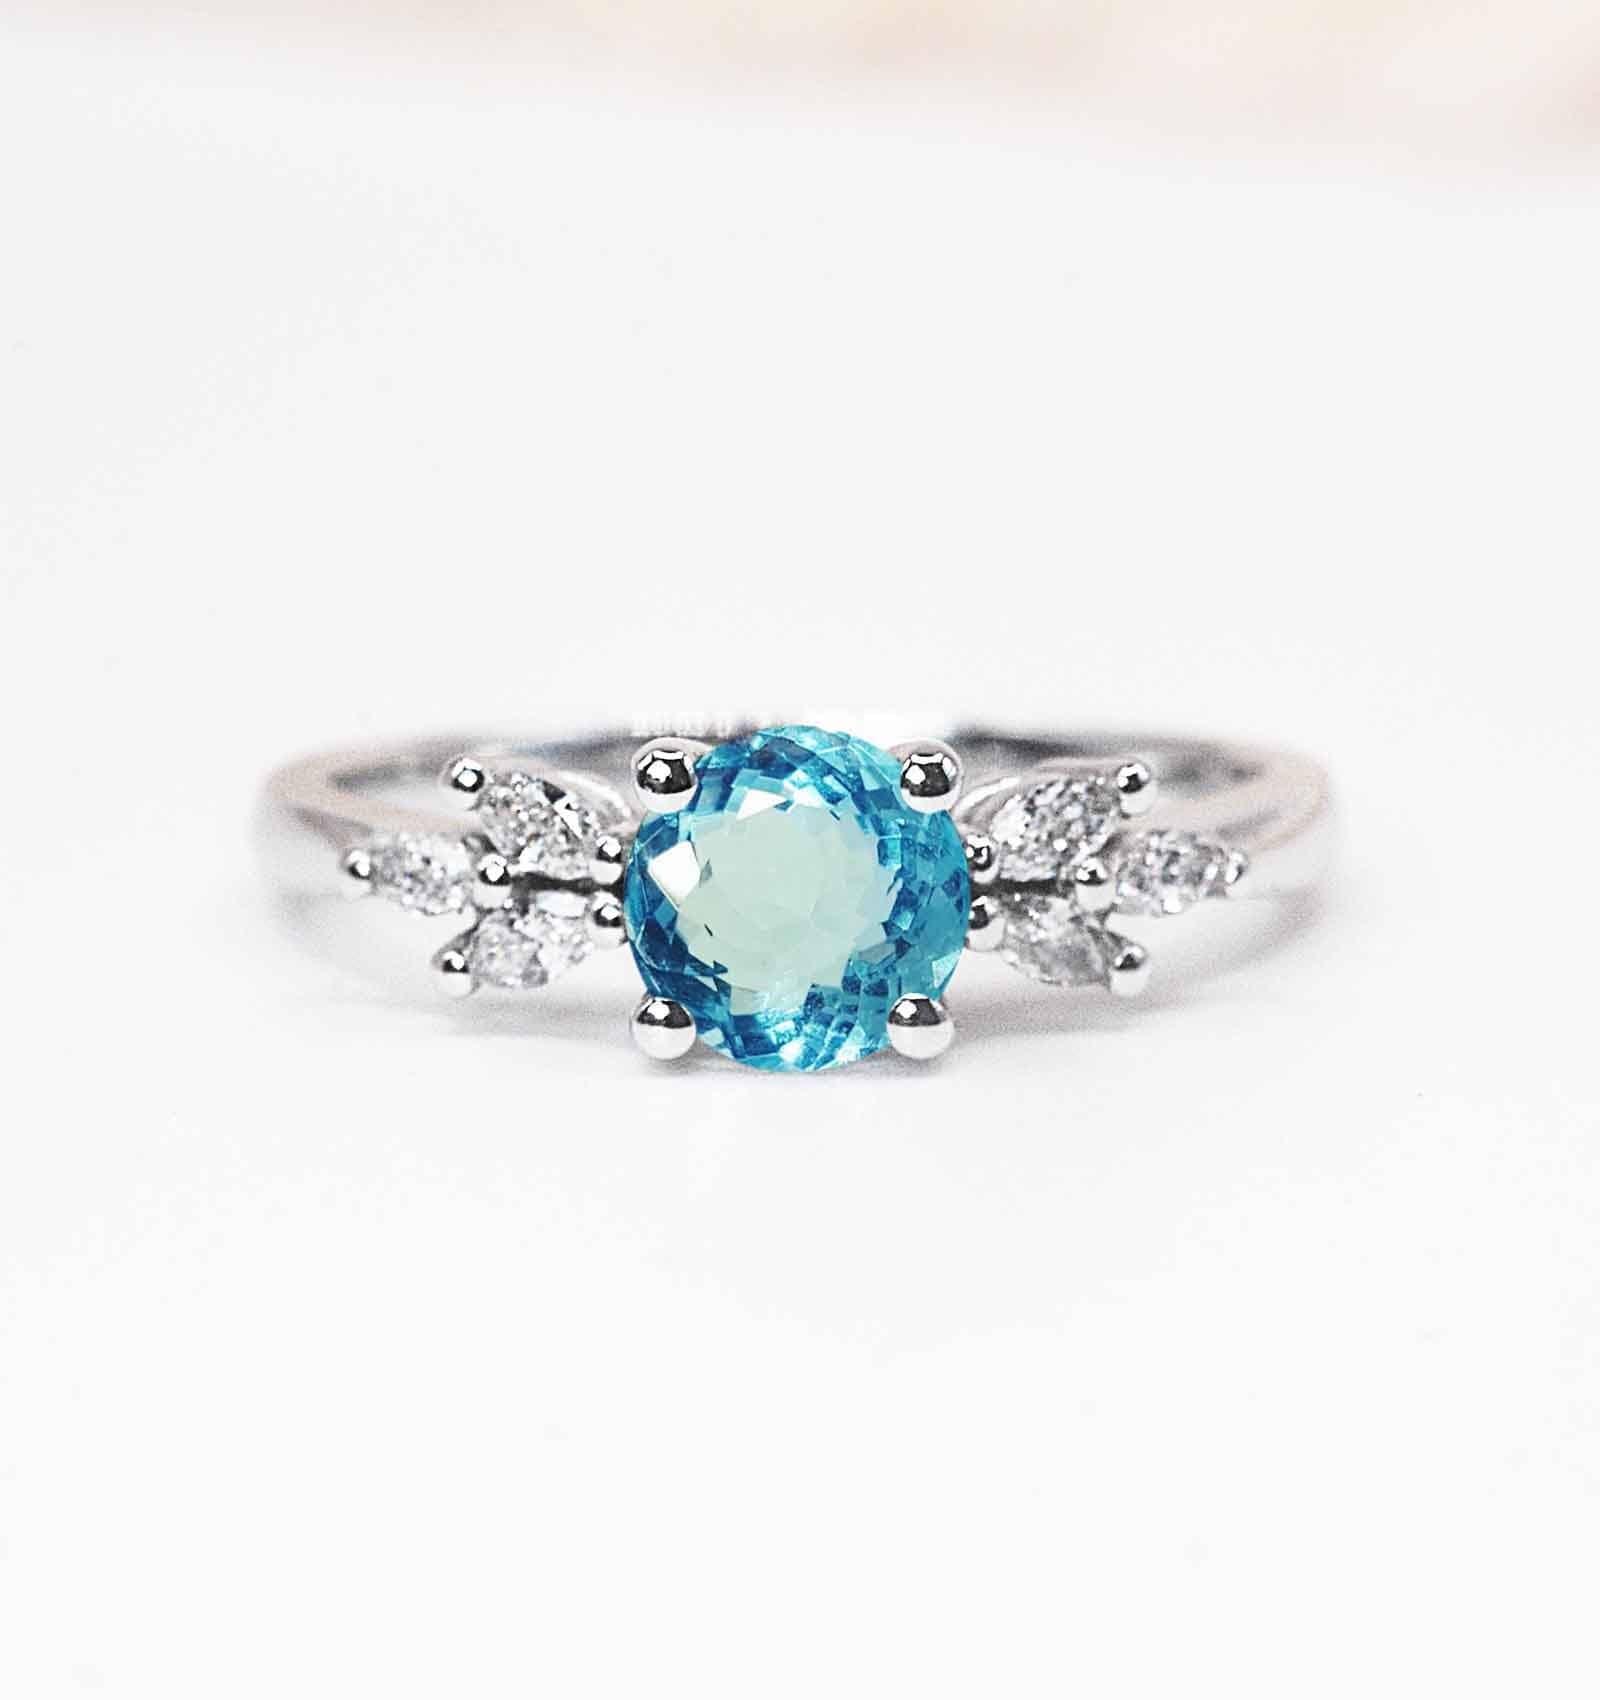 Aquamarine Featuring Engagement Ring | Round Aquamarine & Diamond Art Deco Solid White/Yellow/Rose Gold Stylish Anniversary